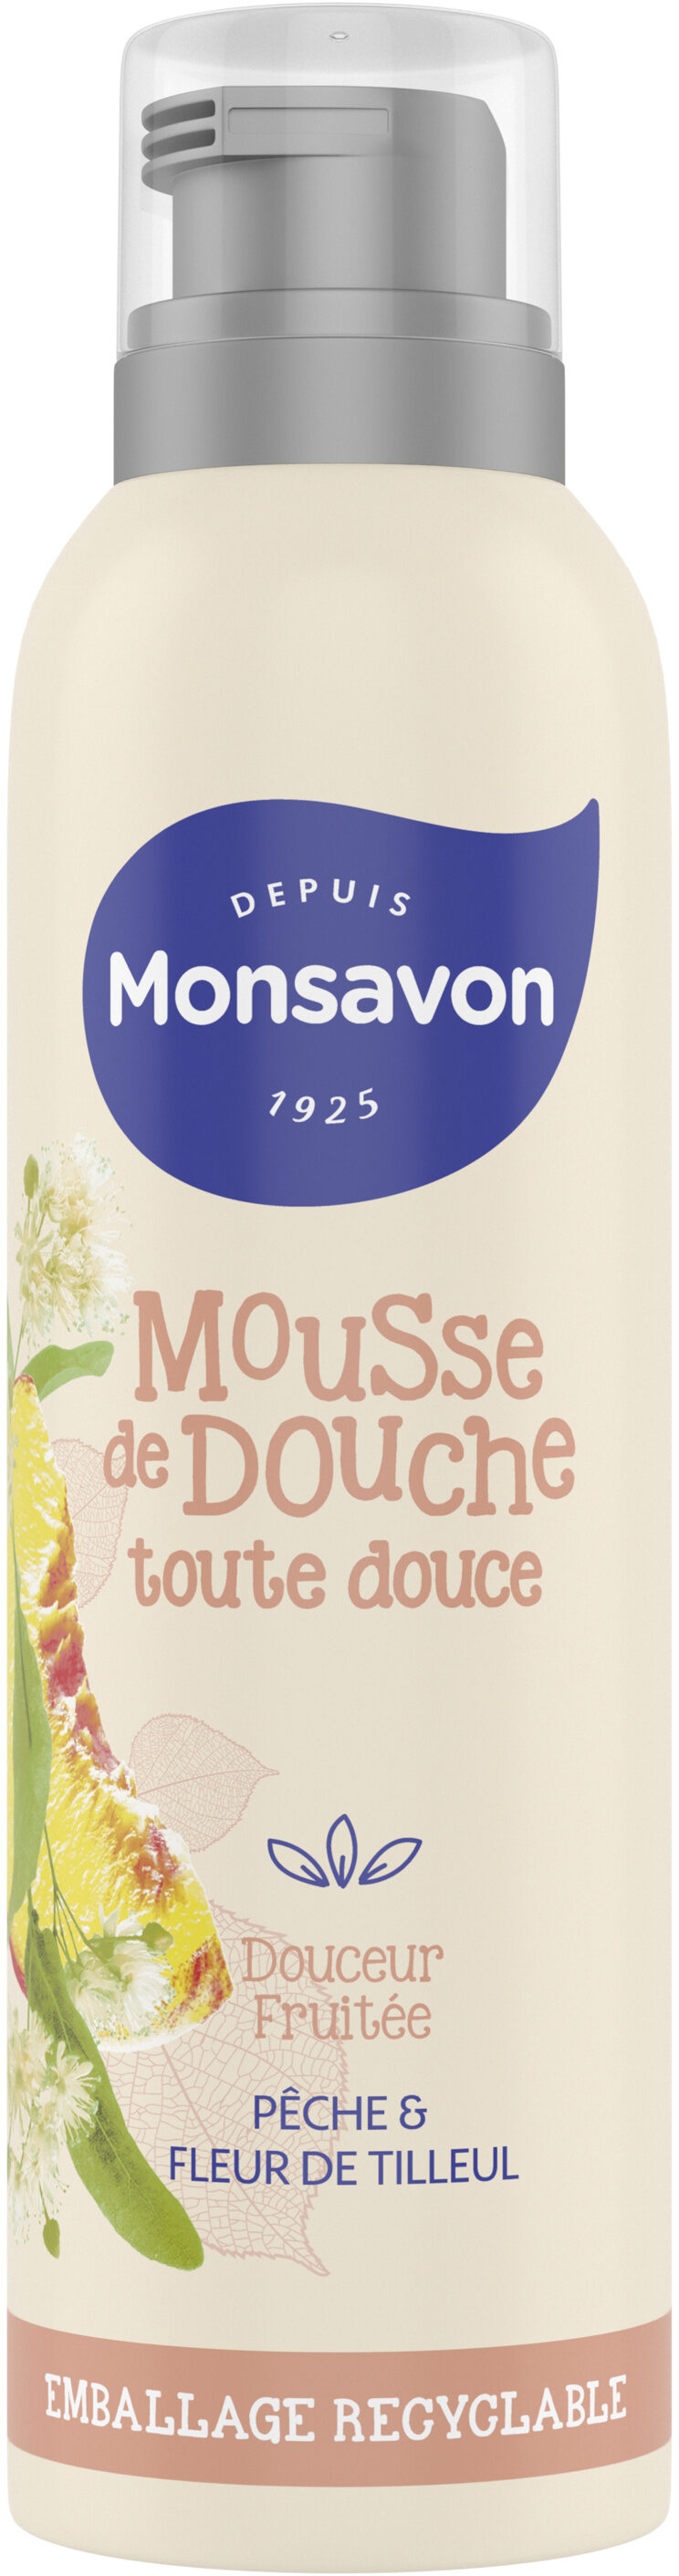 Monsavon Gel Douche Mousse Douceur Fruitée Pêche & Tilleul - Produkto - fr